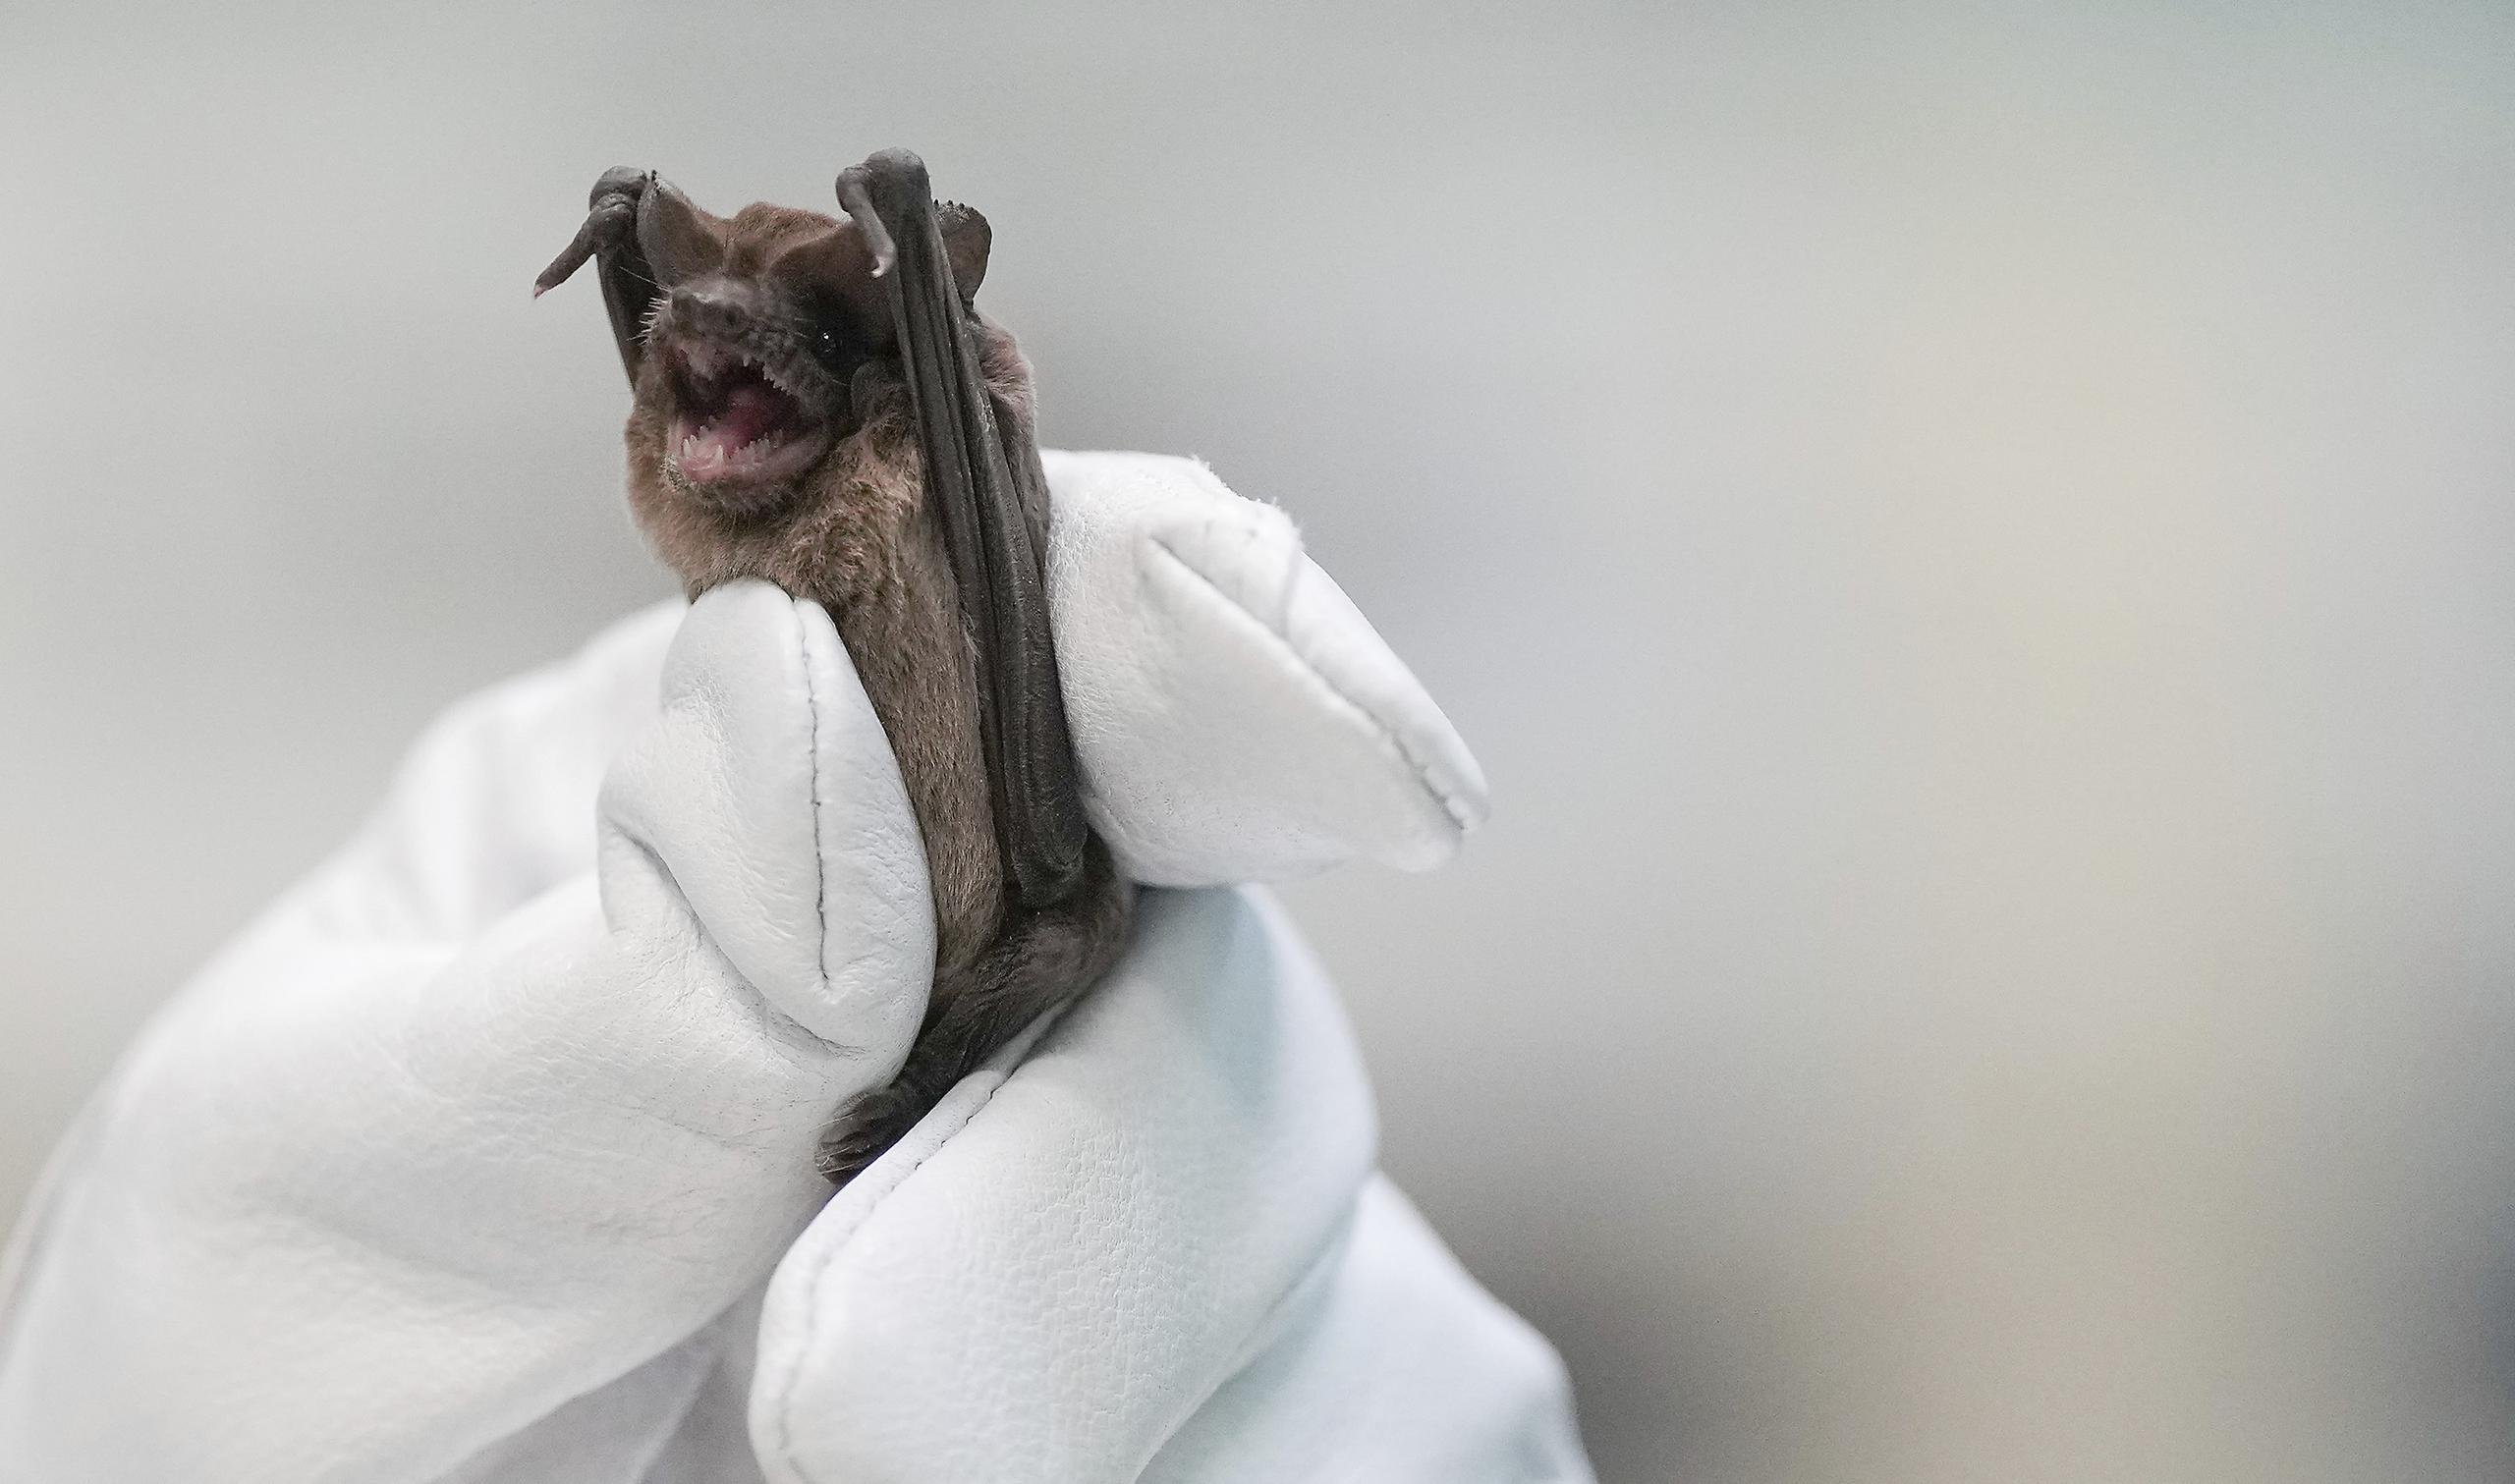 El Centro de Rehabilitación de la Vida Silvestre de Texas rescató cientos de murciélagos debajo del puente, junto con otro grupo de murciélagos en otras partes de Houston que también sufrieron choque hipotérmico.